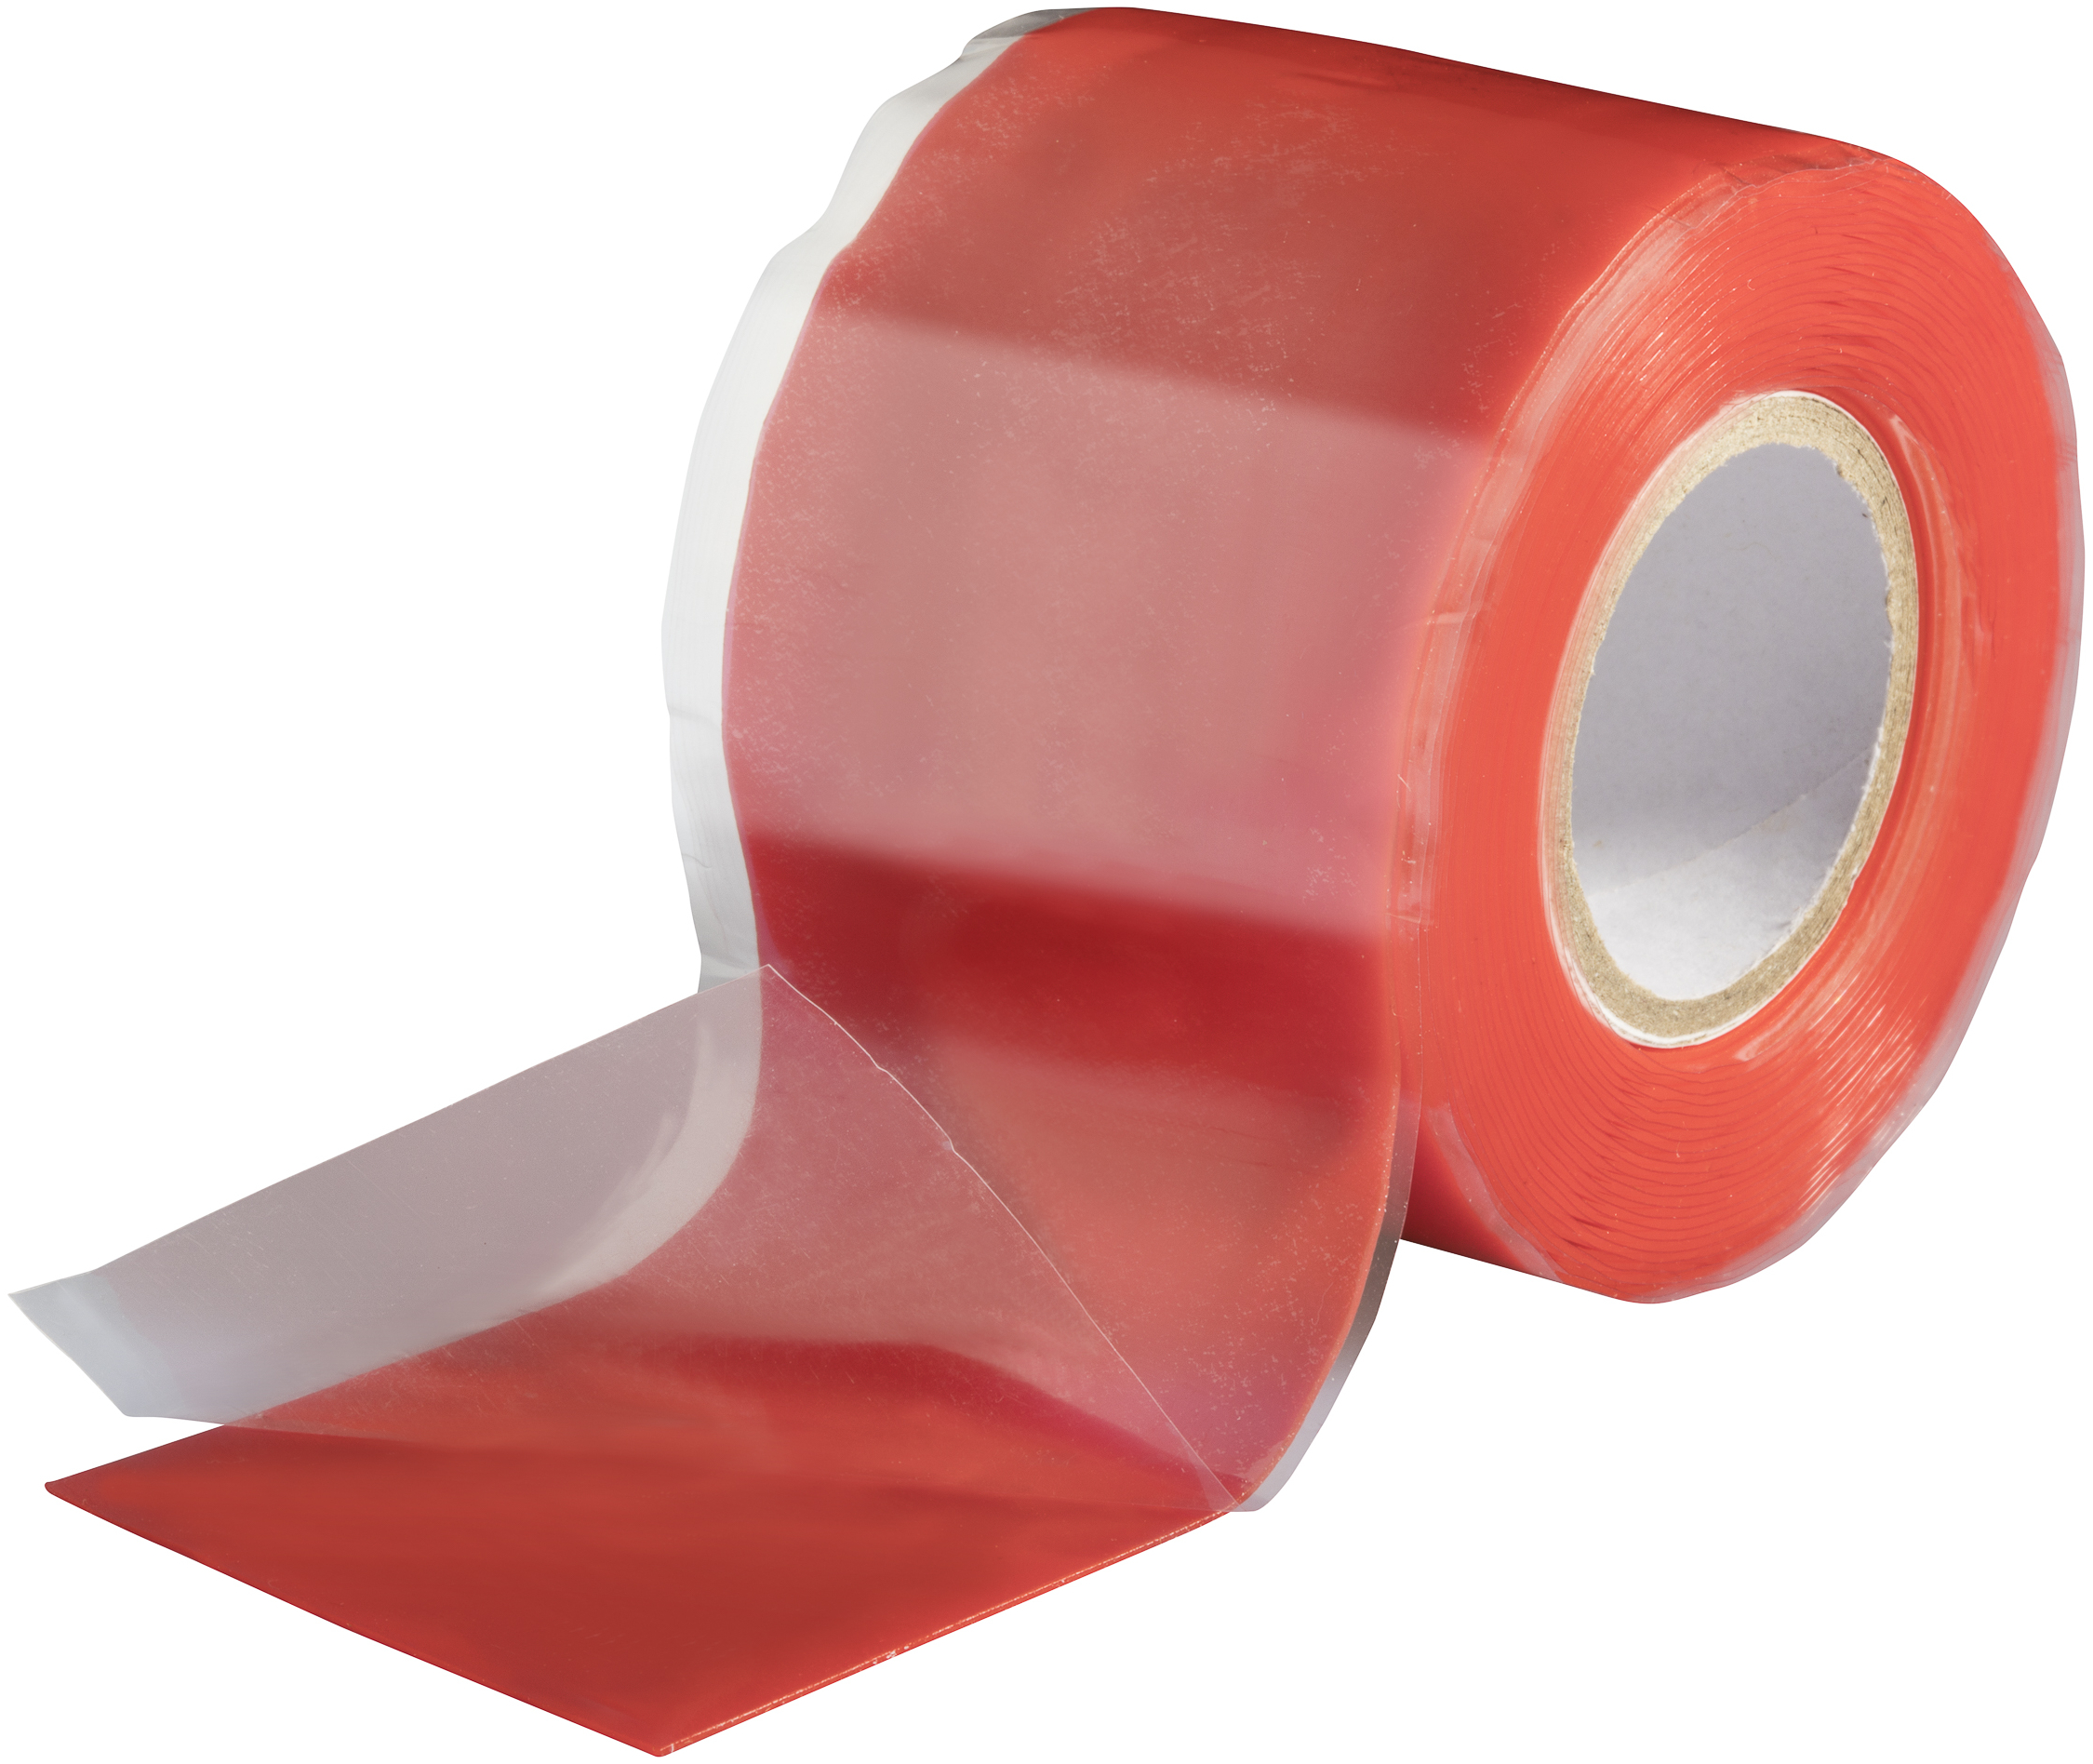 Poppstar selbstverschweißendes Silikonband rot 3m x 38mm